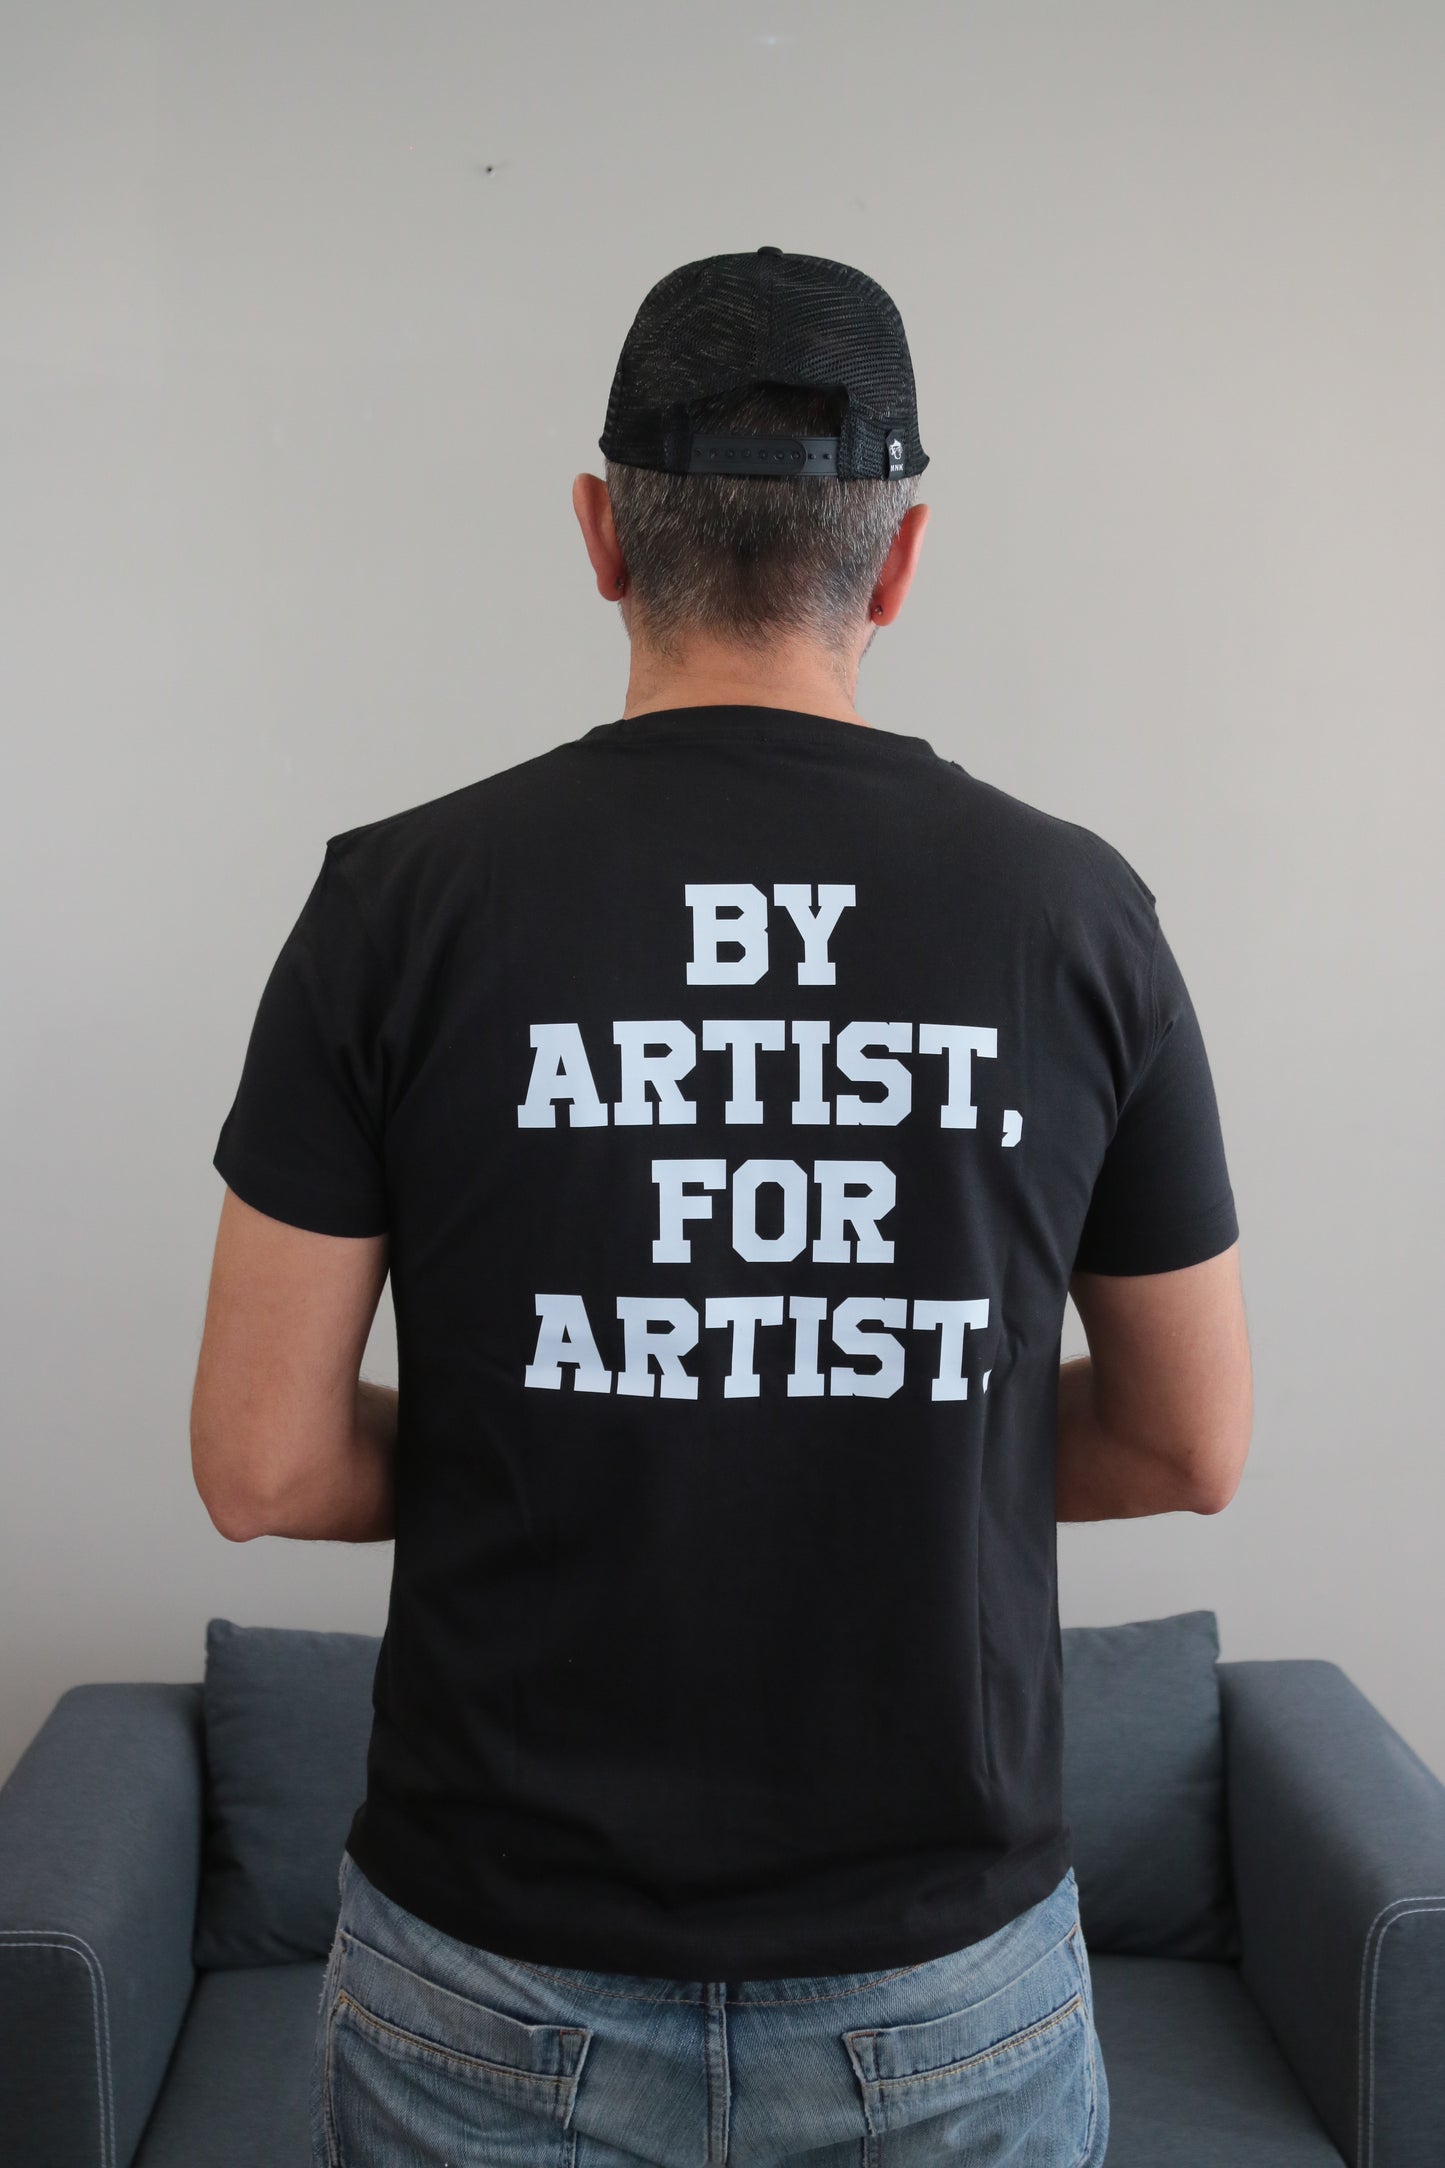 Camiseta negra "By Artist, For Artist"